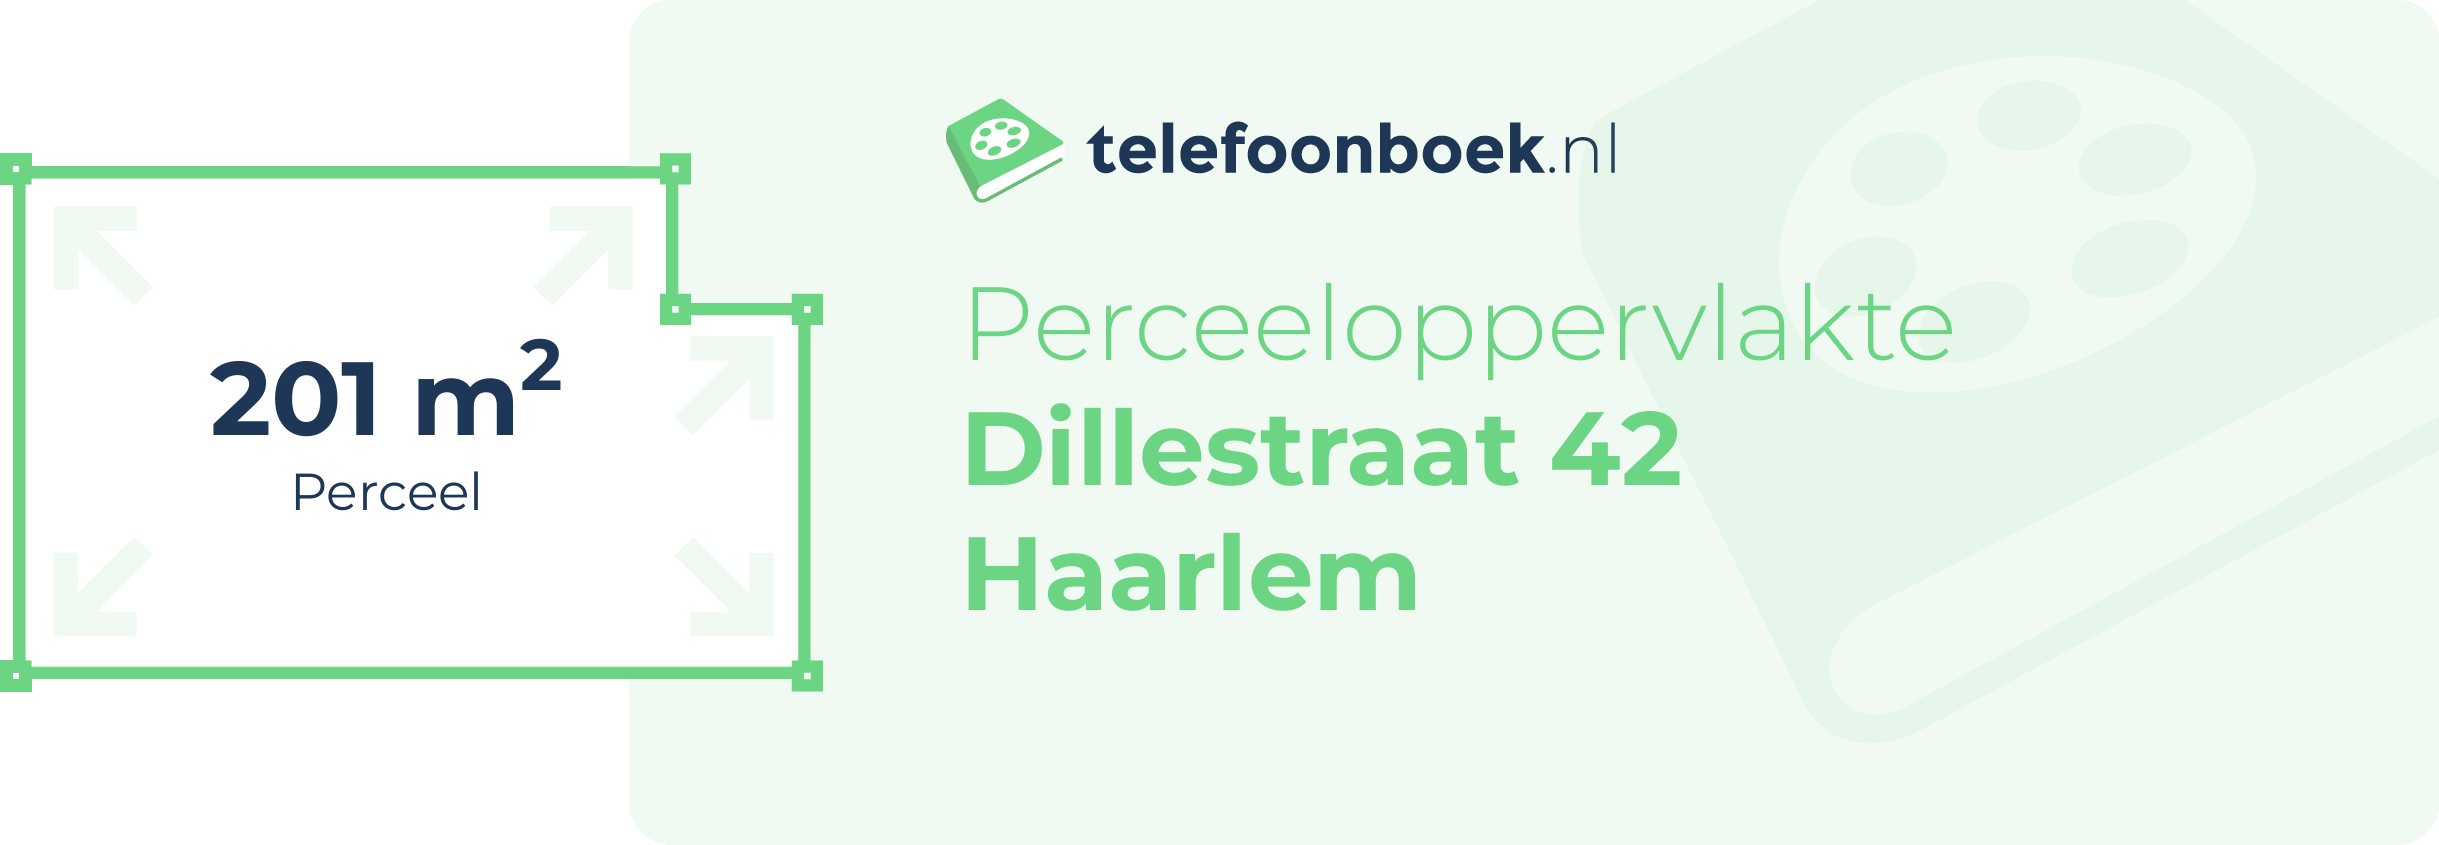 Perceeloppervlakte Dillestraat 42 Haarlem